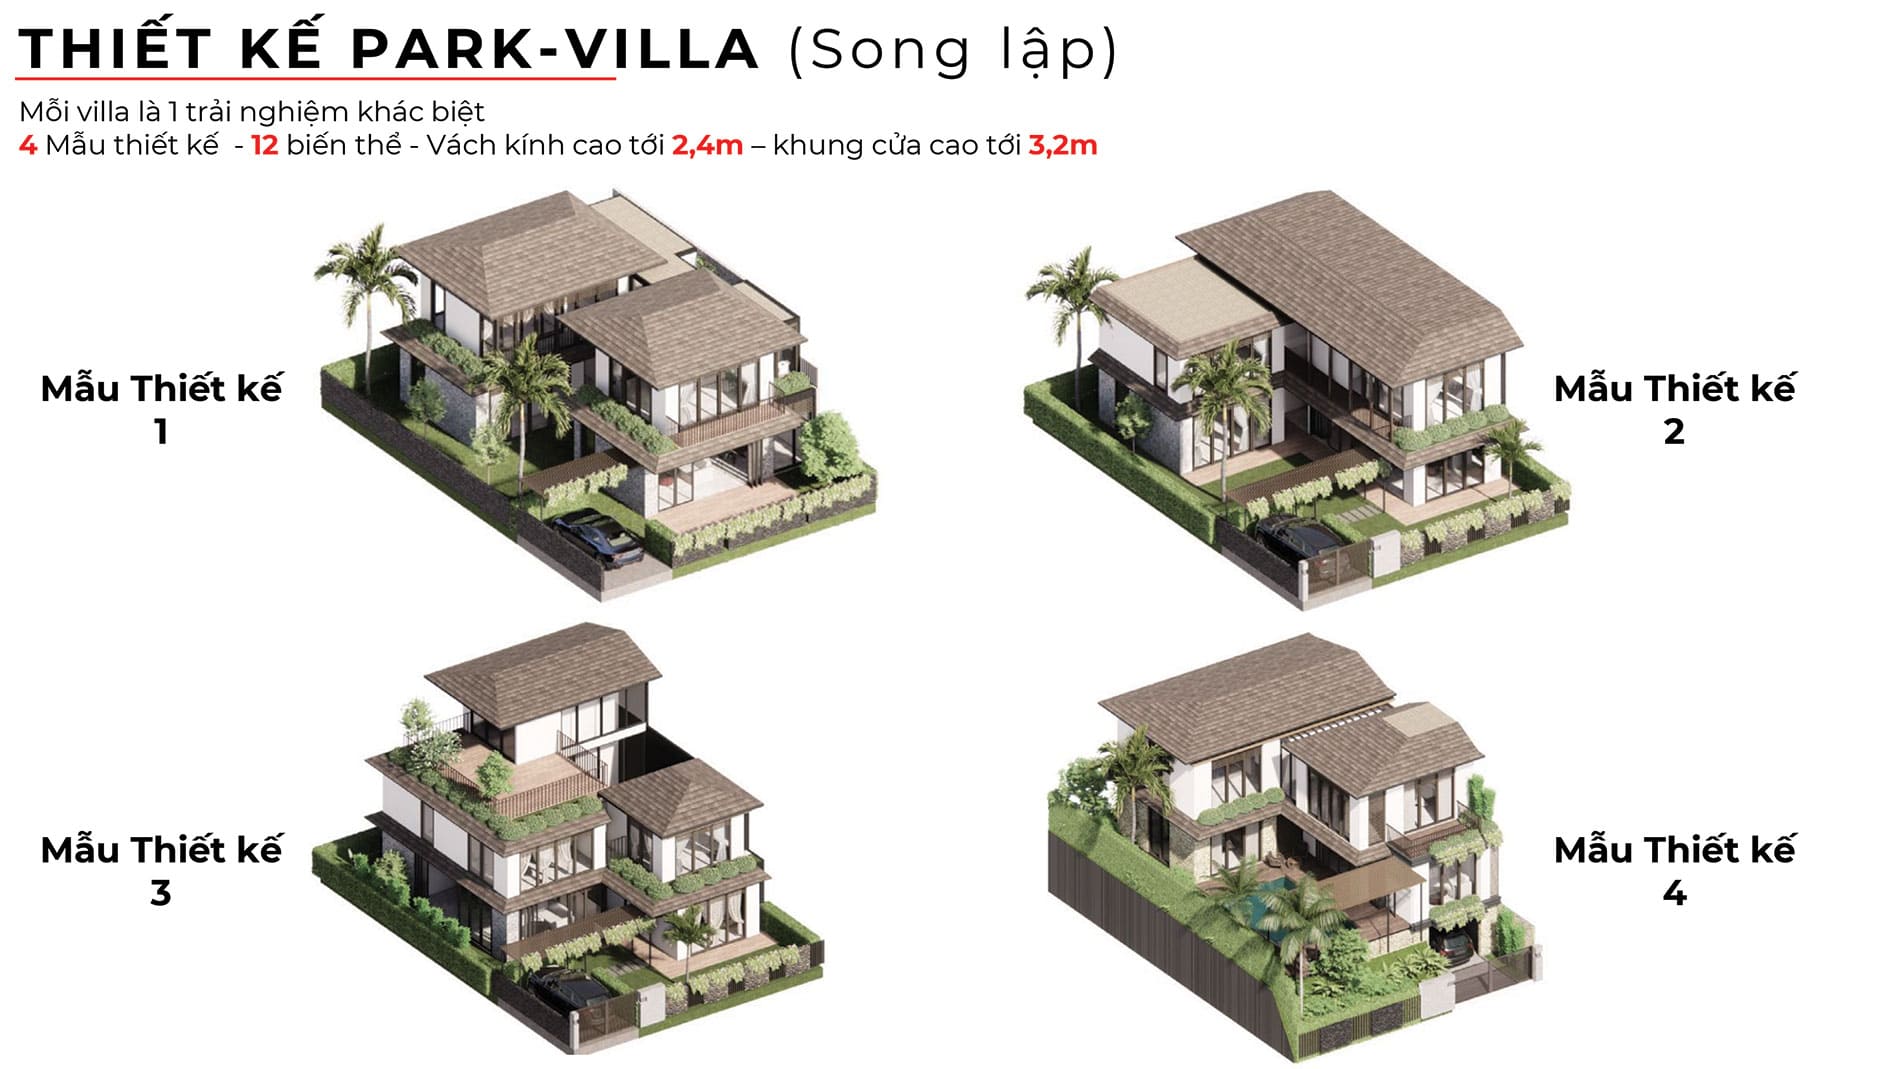 Mẫu thiết kế biệt thự song lập Park Villa.